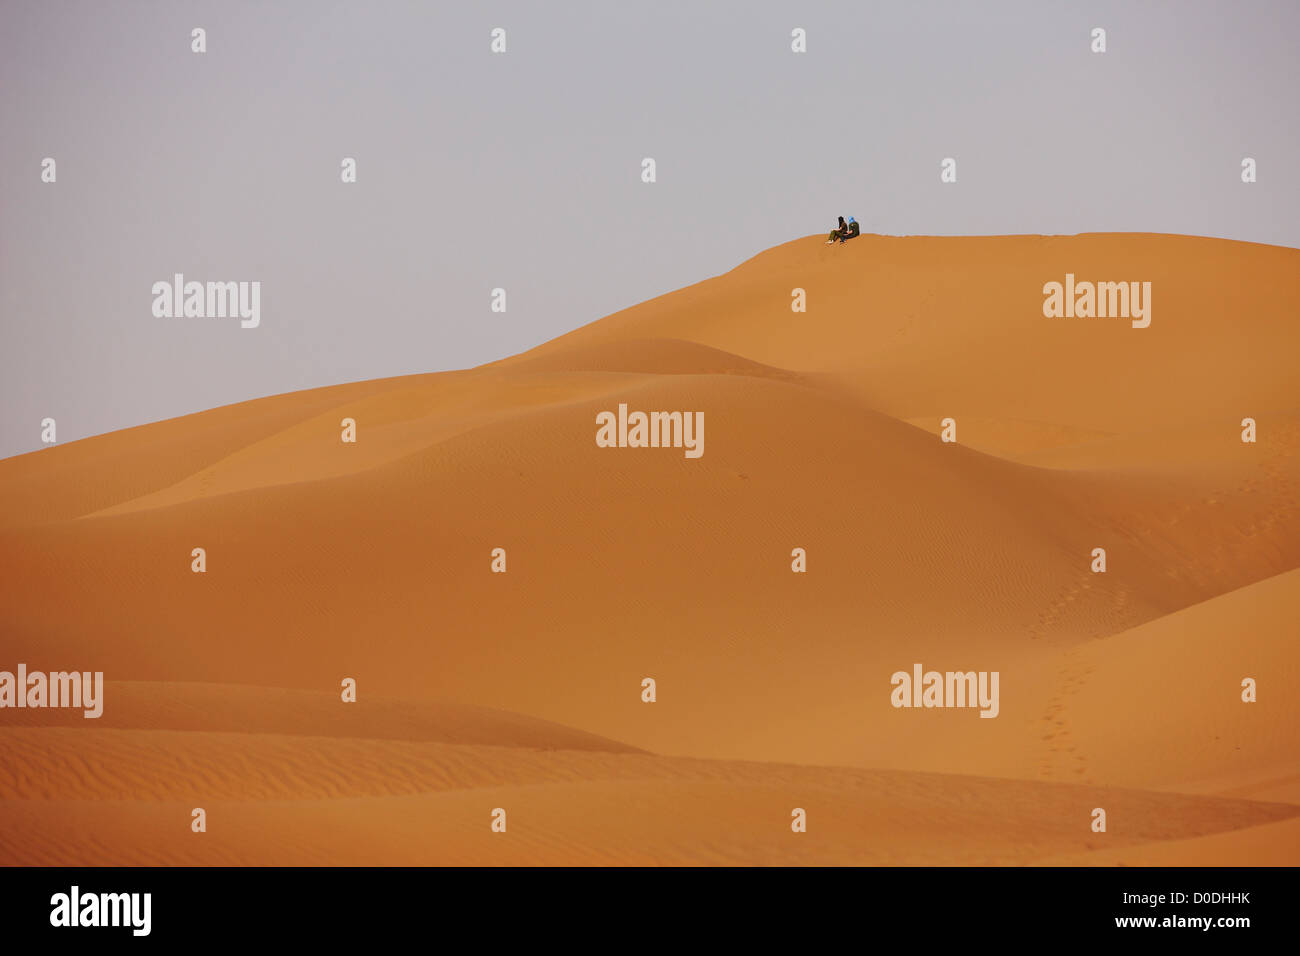 Deux personnes au sommet d'une grande dune de sable de l'Erg Chegaga, de l'intérieur désert du Sahara, Maroc Banque D'Images